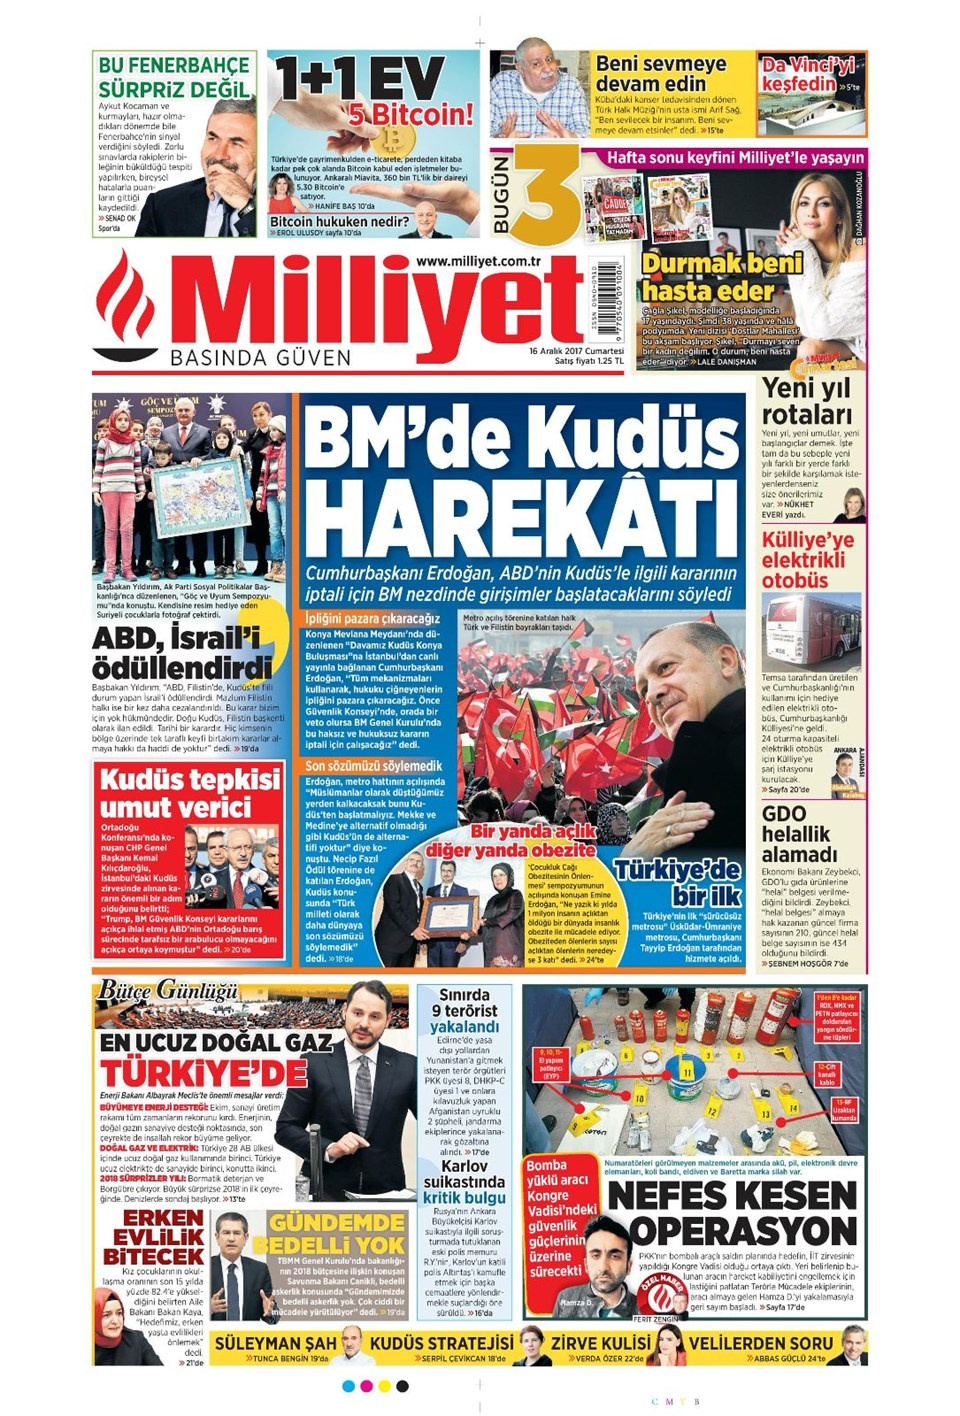 Gazete manşetleri Hürriyet - Sözcü - Sabah 16 Aralık 2017